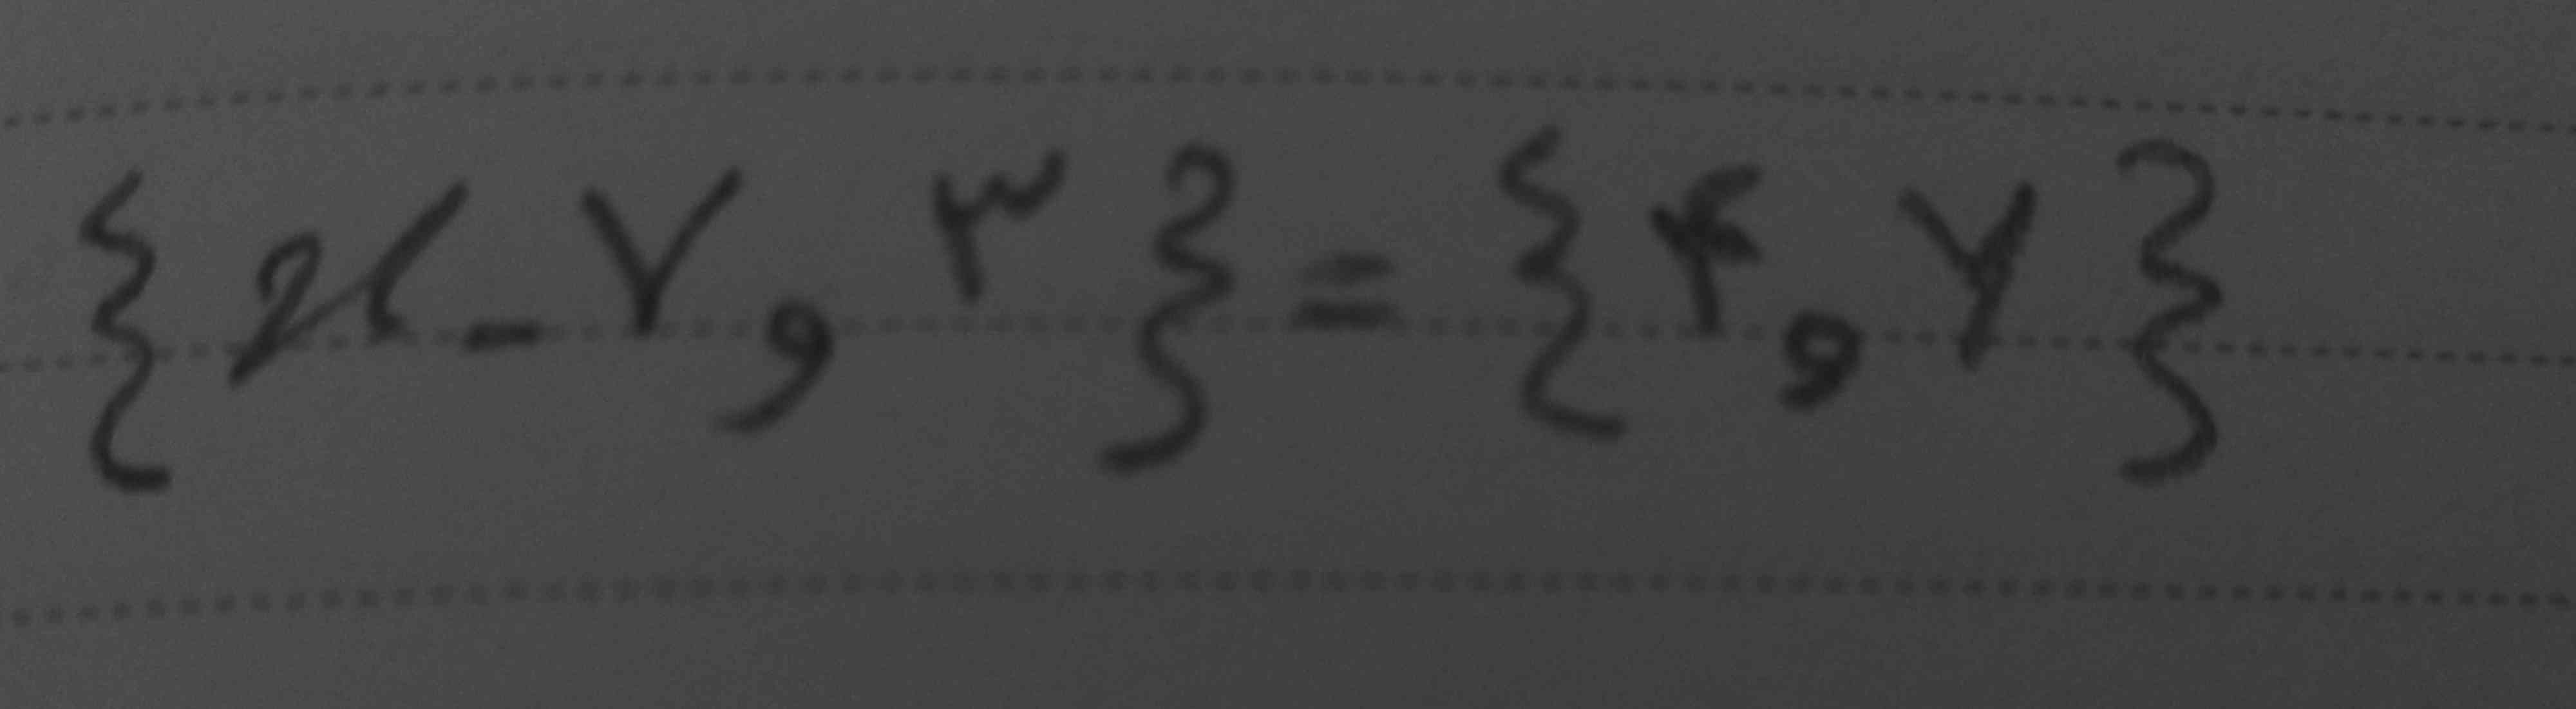 دوستان جواب این معادله رو لطف کنید
تاج میدم ♡